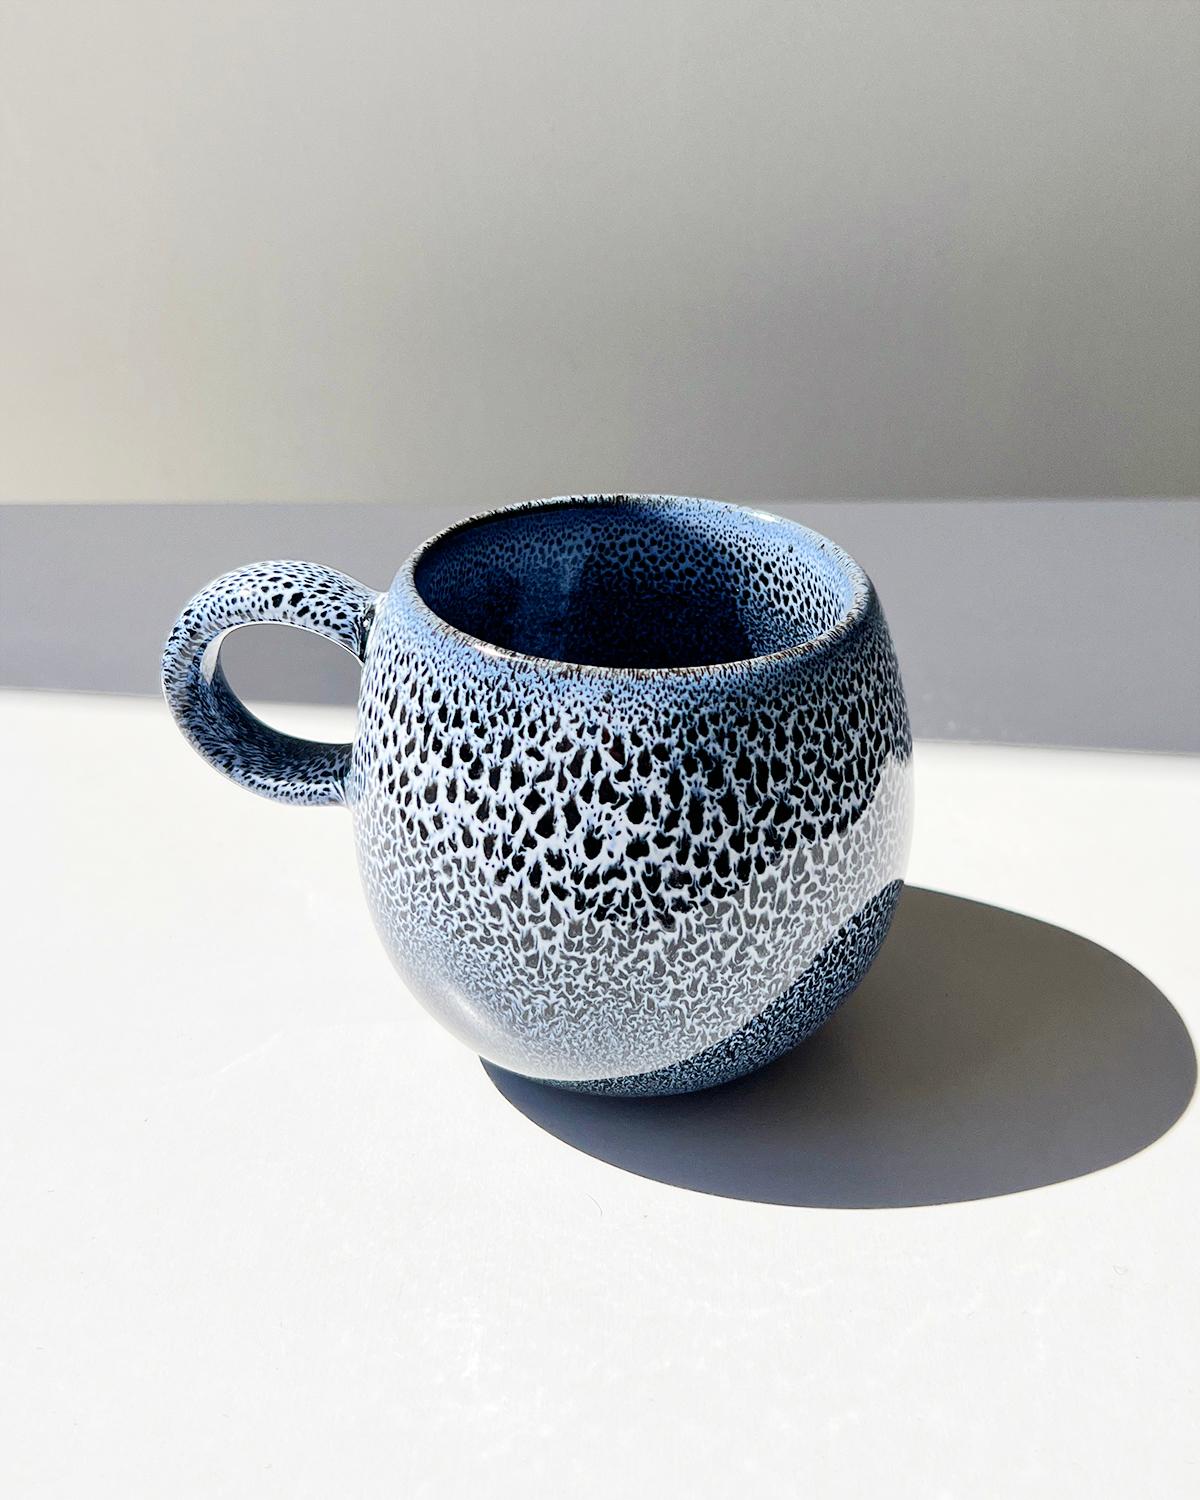 Ein Set von handgefertigten Tassen für Ihren Kaffee. Für diejenigen, die ein elegantes und dezentes Tassenset suchen, sind diese atemberaubenden indigoblauen weißen Tassen das perfekte Dekorationsstück für Ihre Sammlung. Die organische,